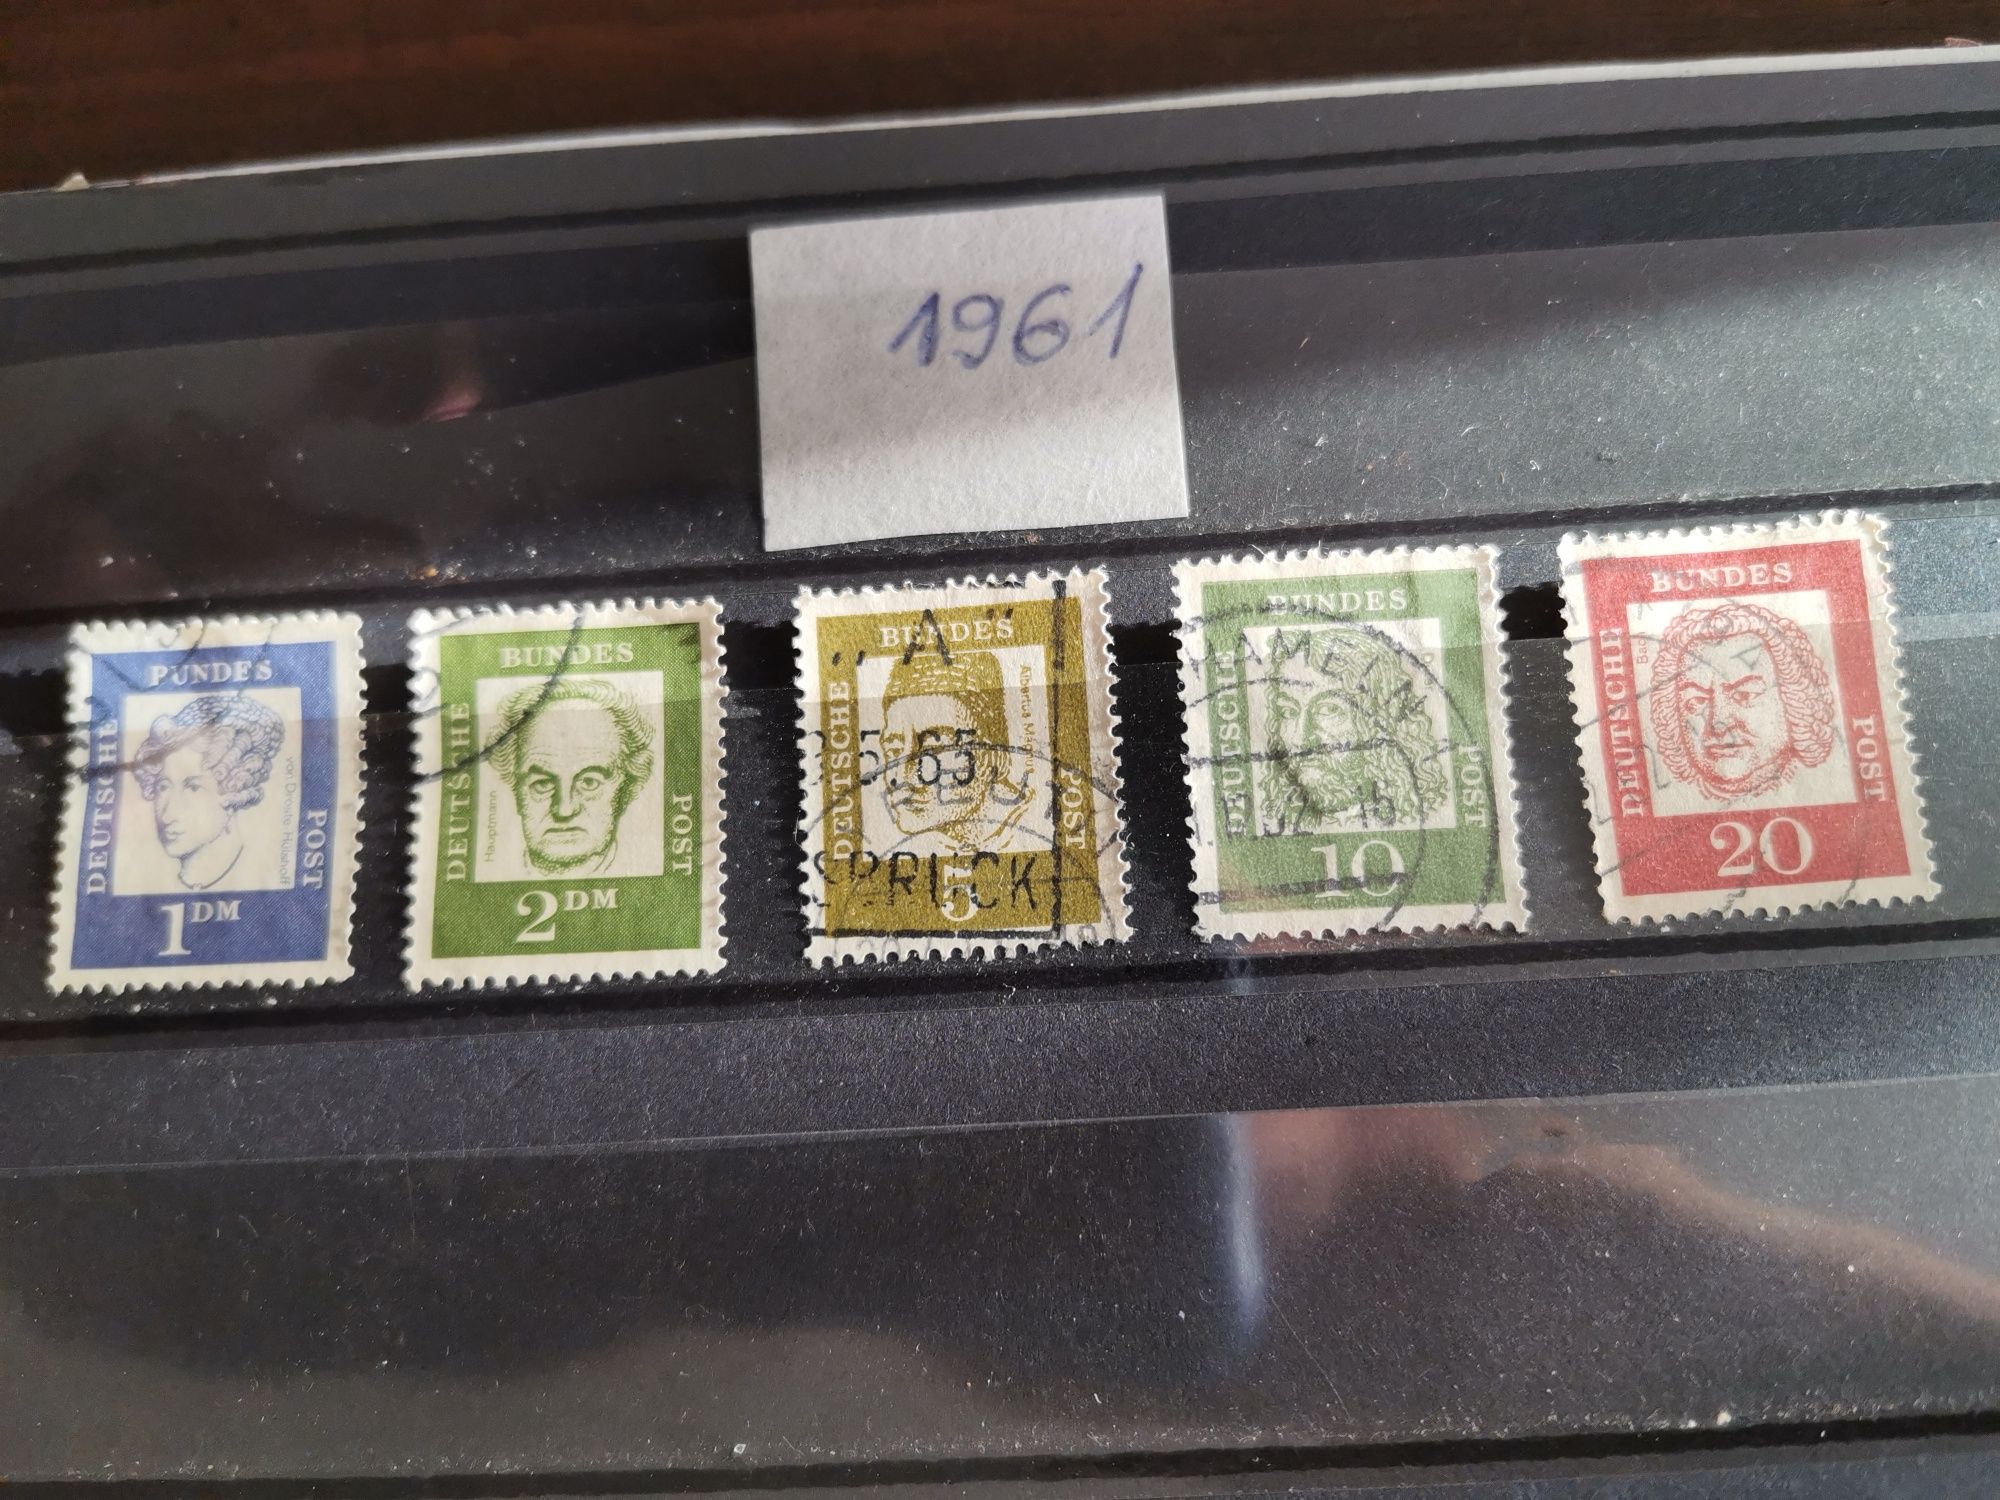 Stare znaczki niemieckie 1961 rok